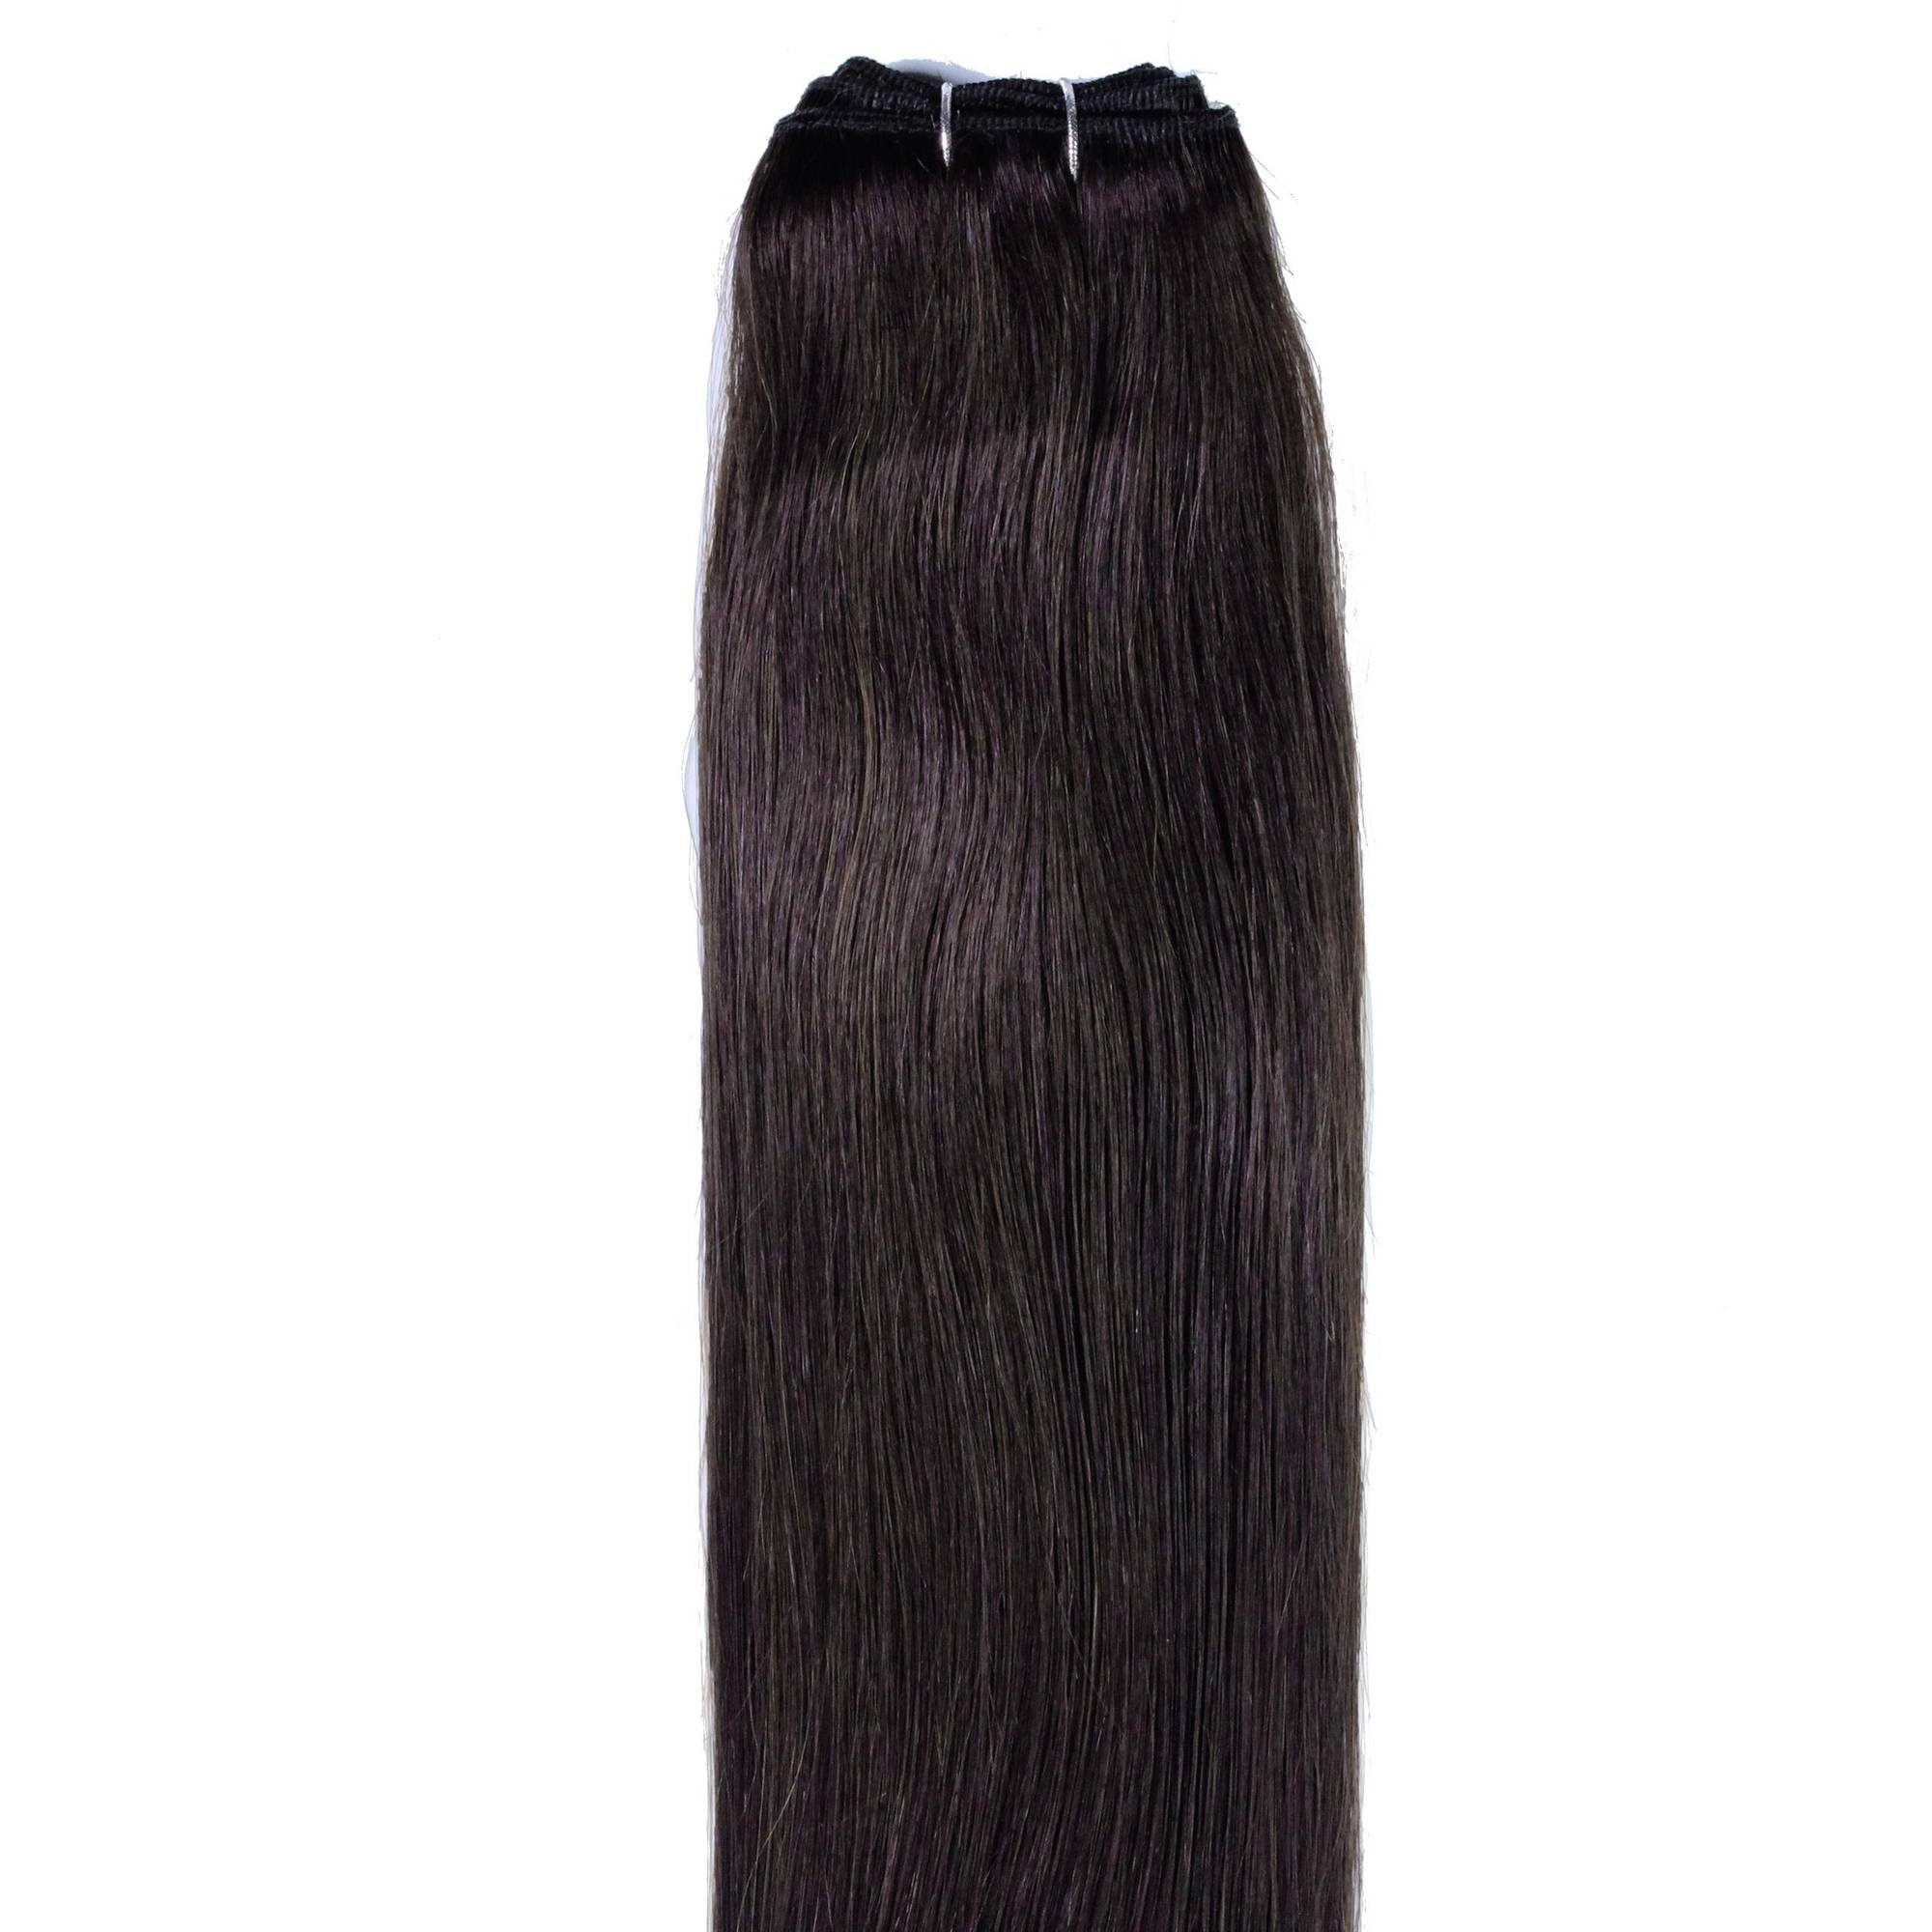 Glatte Hellbraun Echthaartresse Echthaar-Extension hair2heart #5/0 40cm